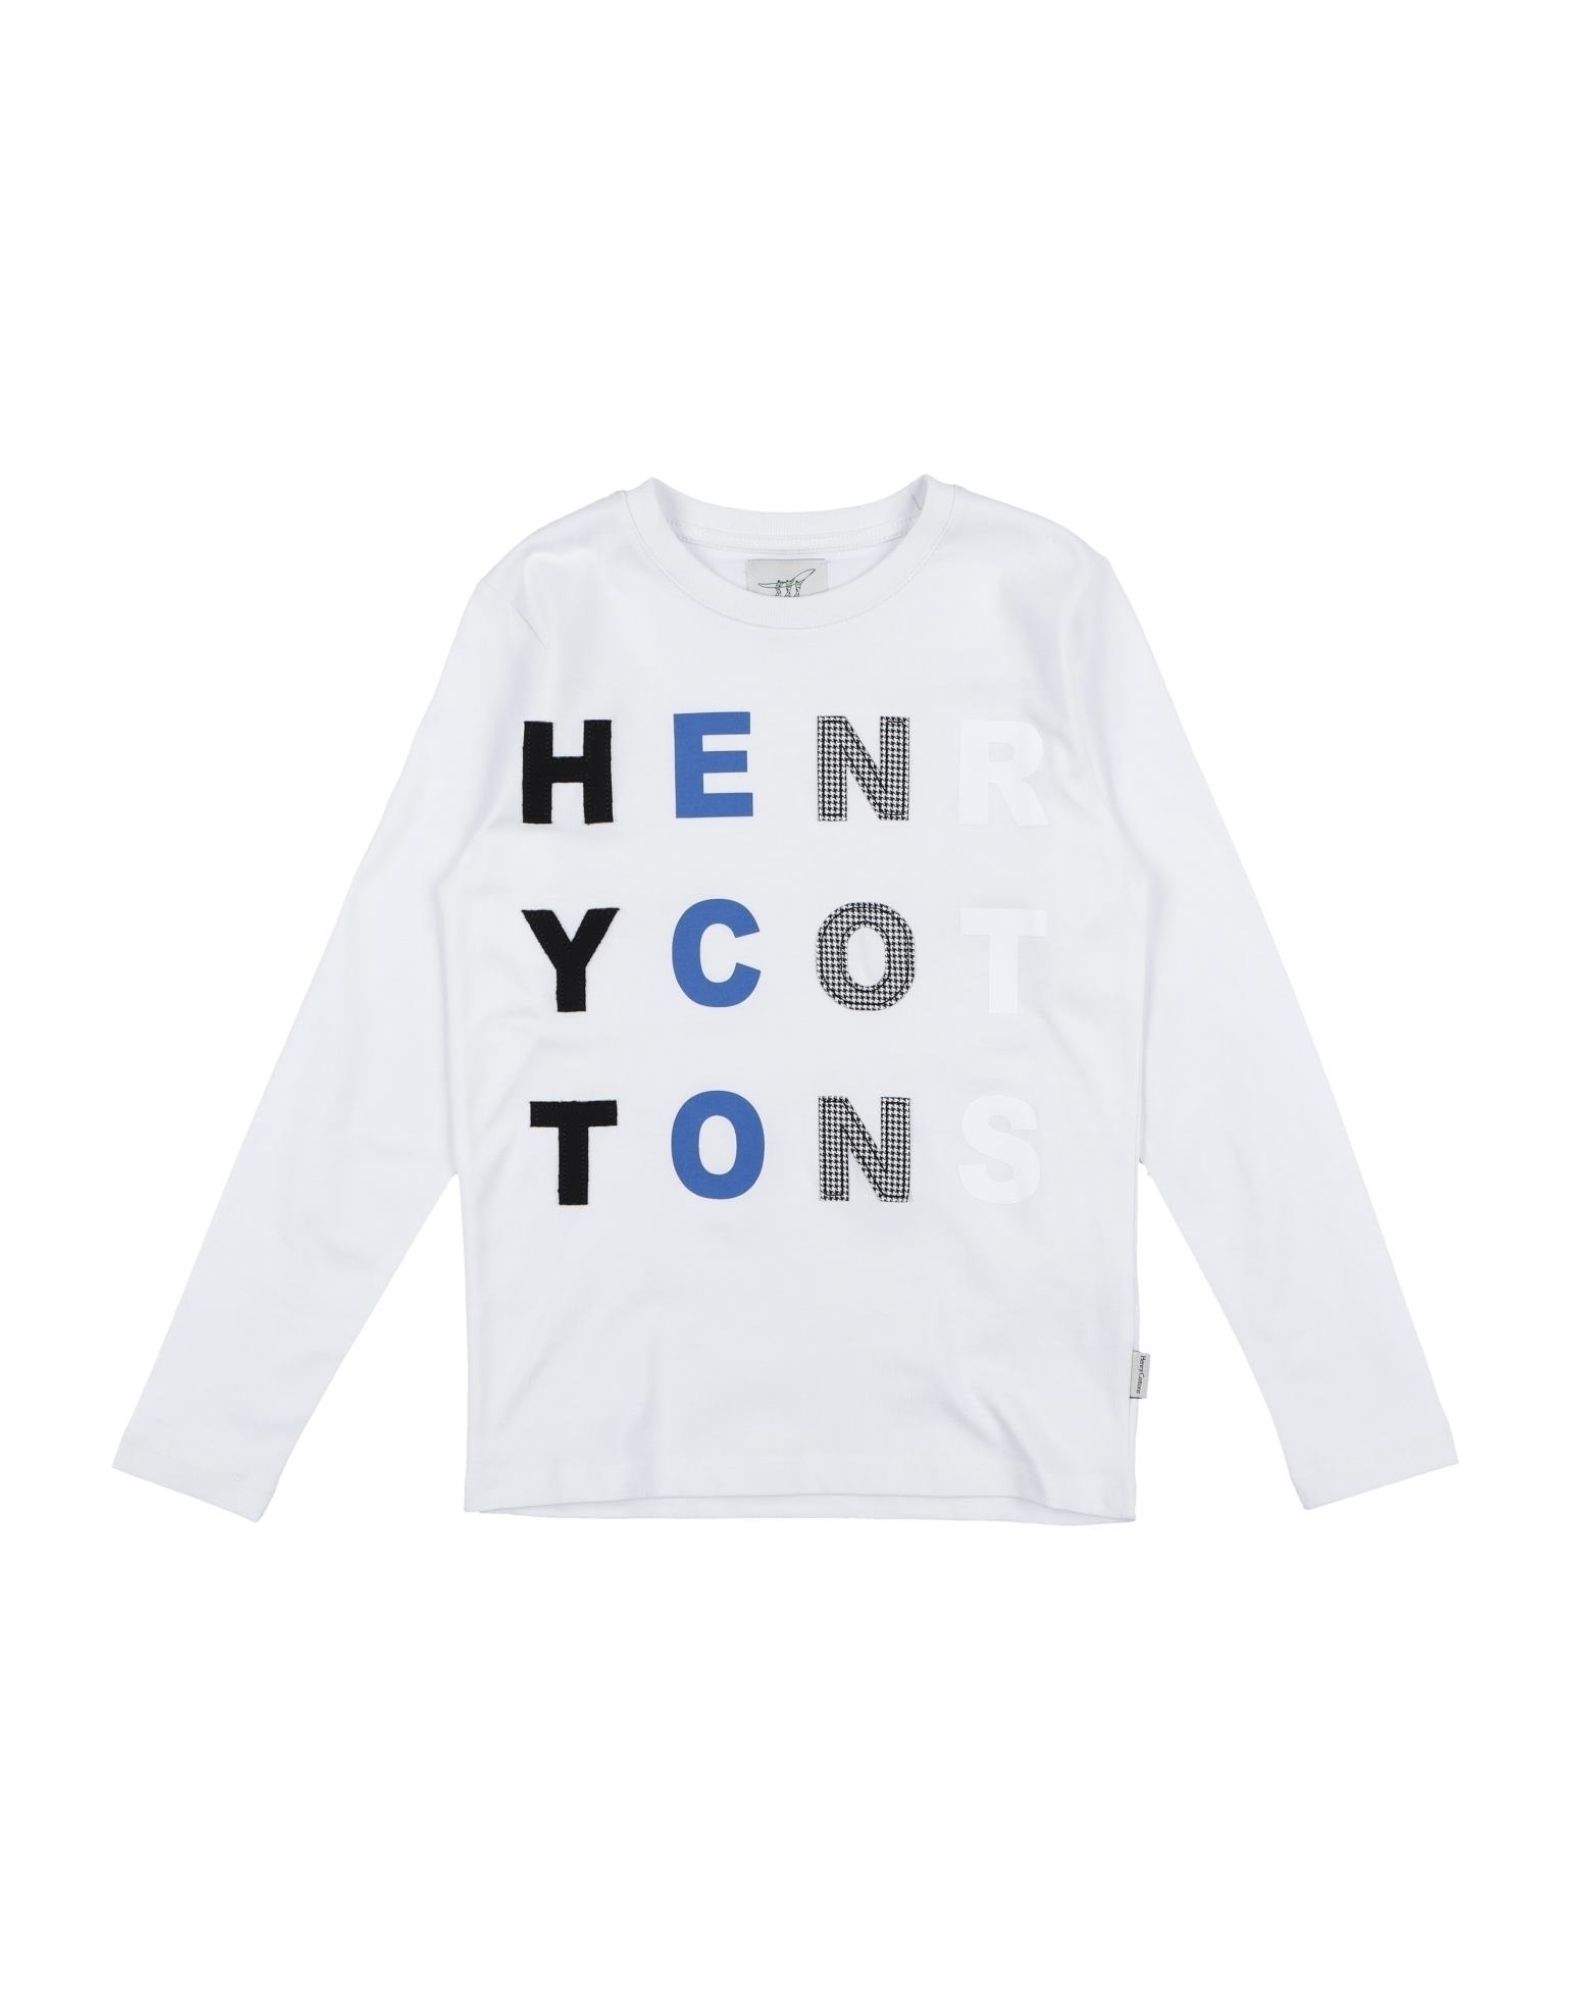 HENRY COTTON'S T-SHIRTS,12334040OD 1